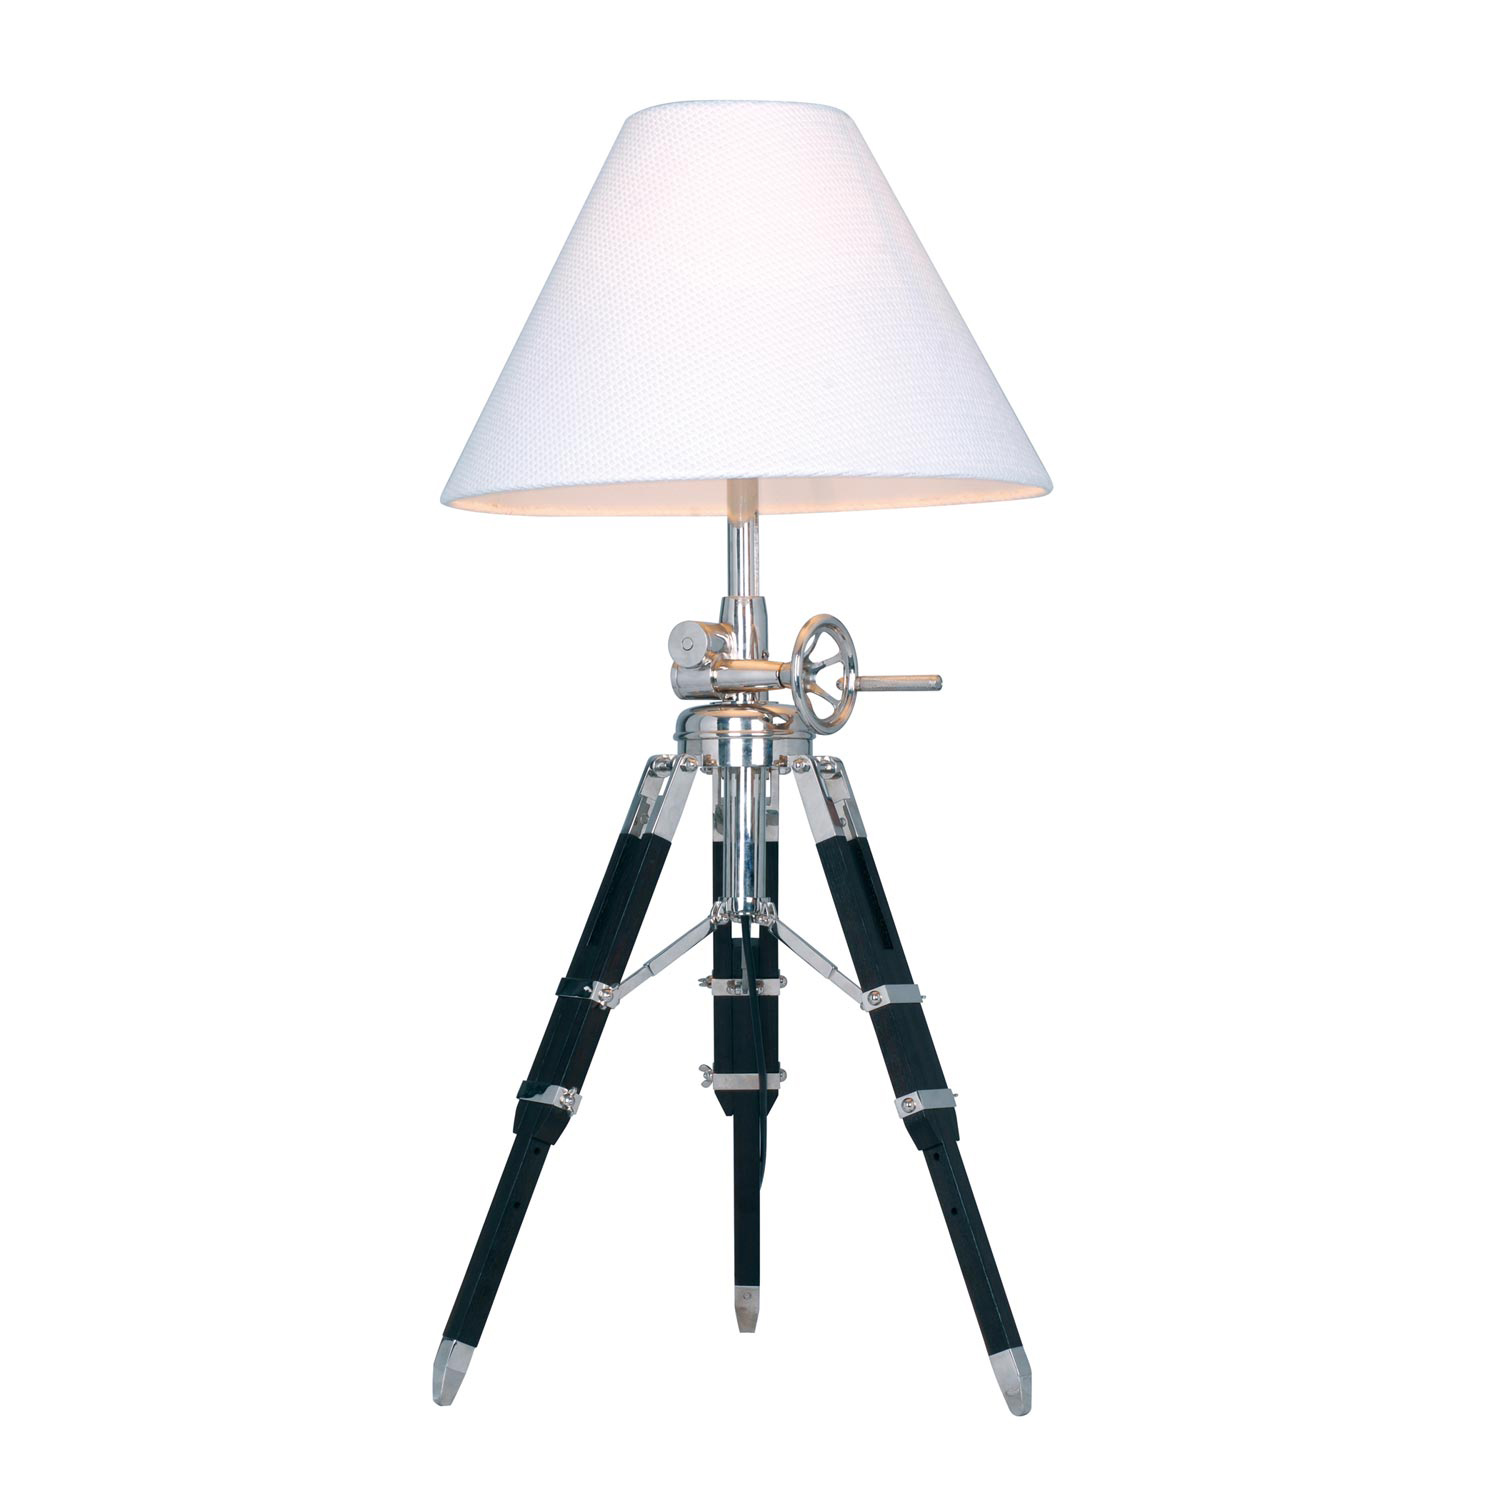 Elk Lighting D2124 Studio Table Lamp - Chrome and Black